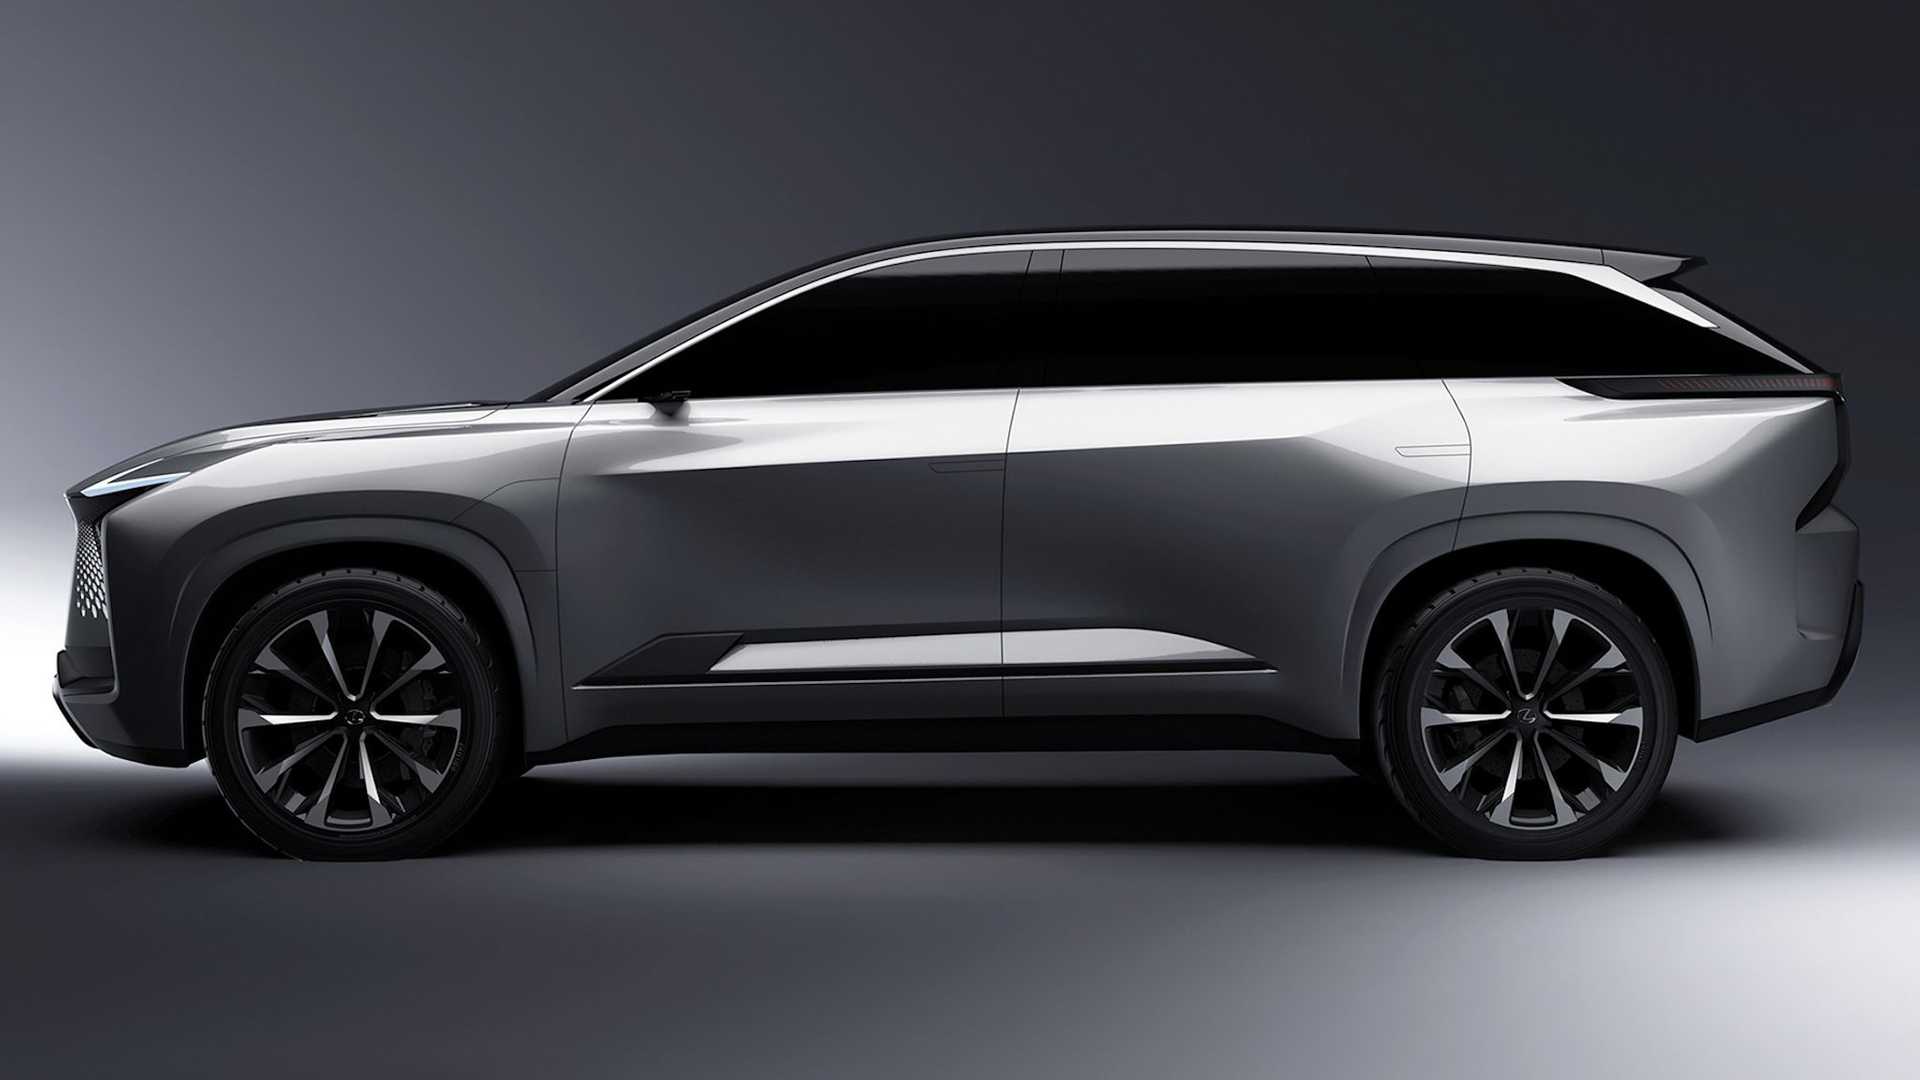 SUV chạy điện cỡ lớn của Lexus trông bóng bẩy hơn trong bộ ảnh mới lexus-electrified-suv-1.jpg